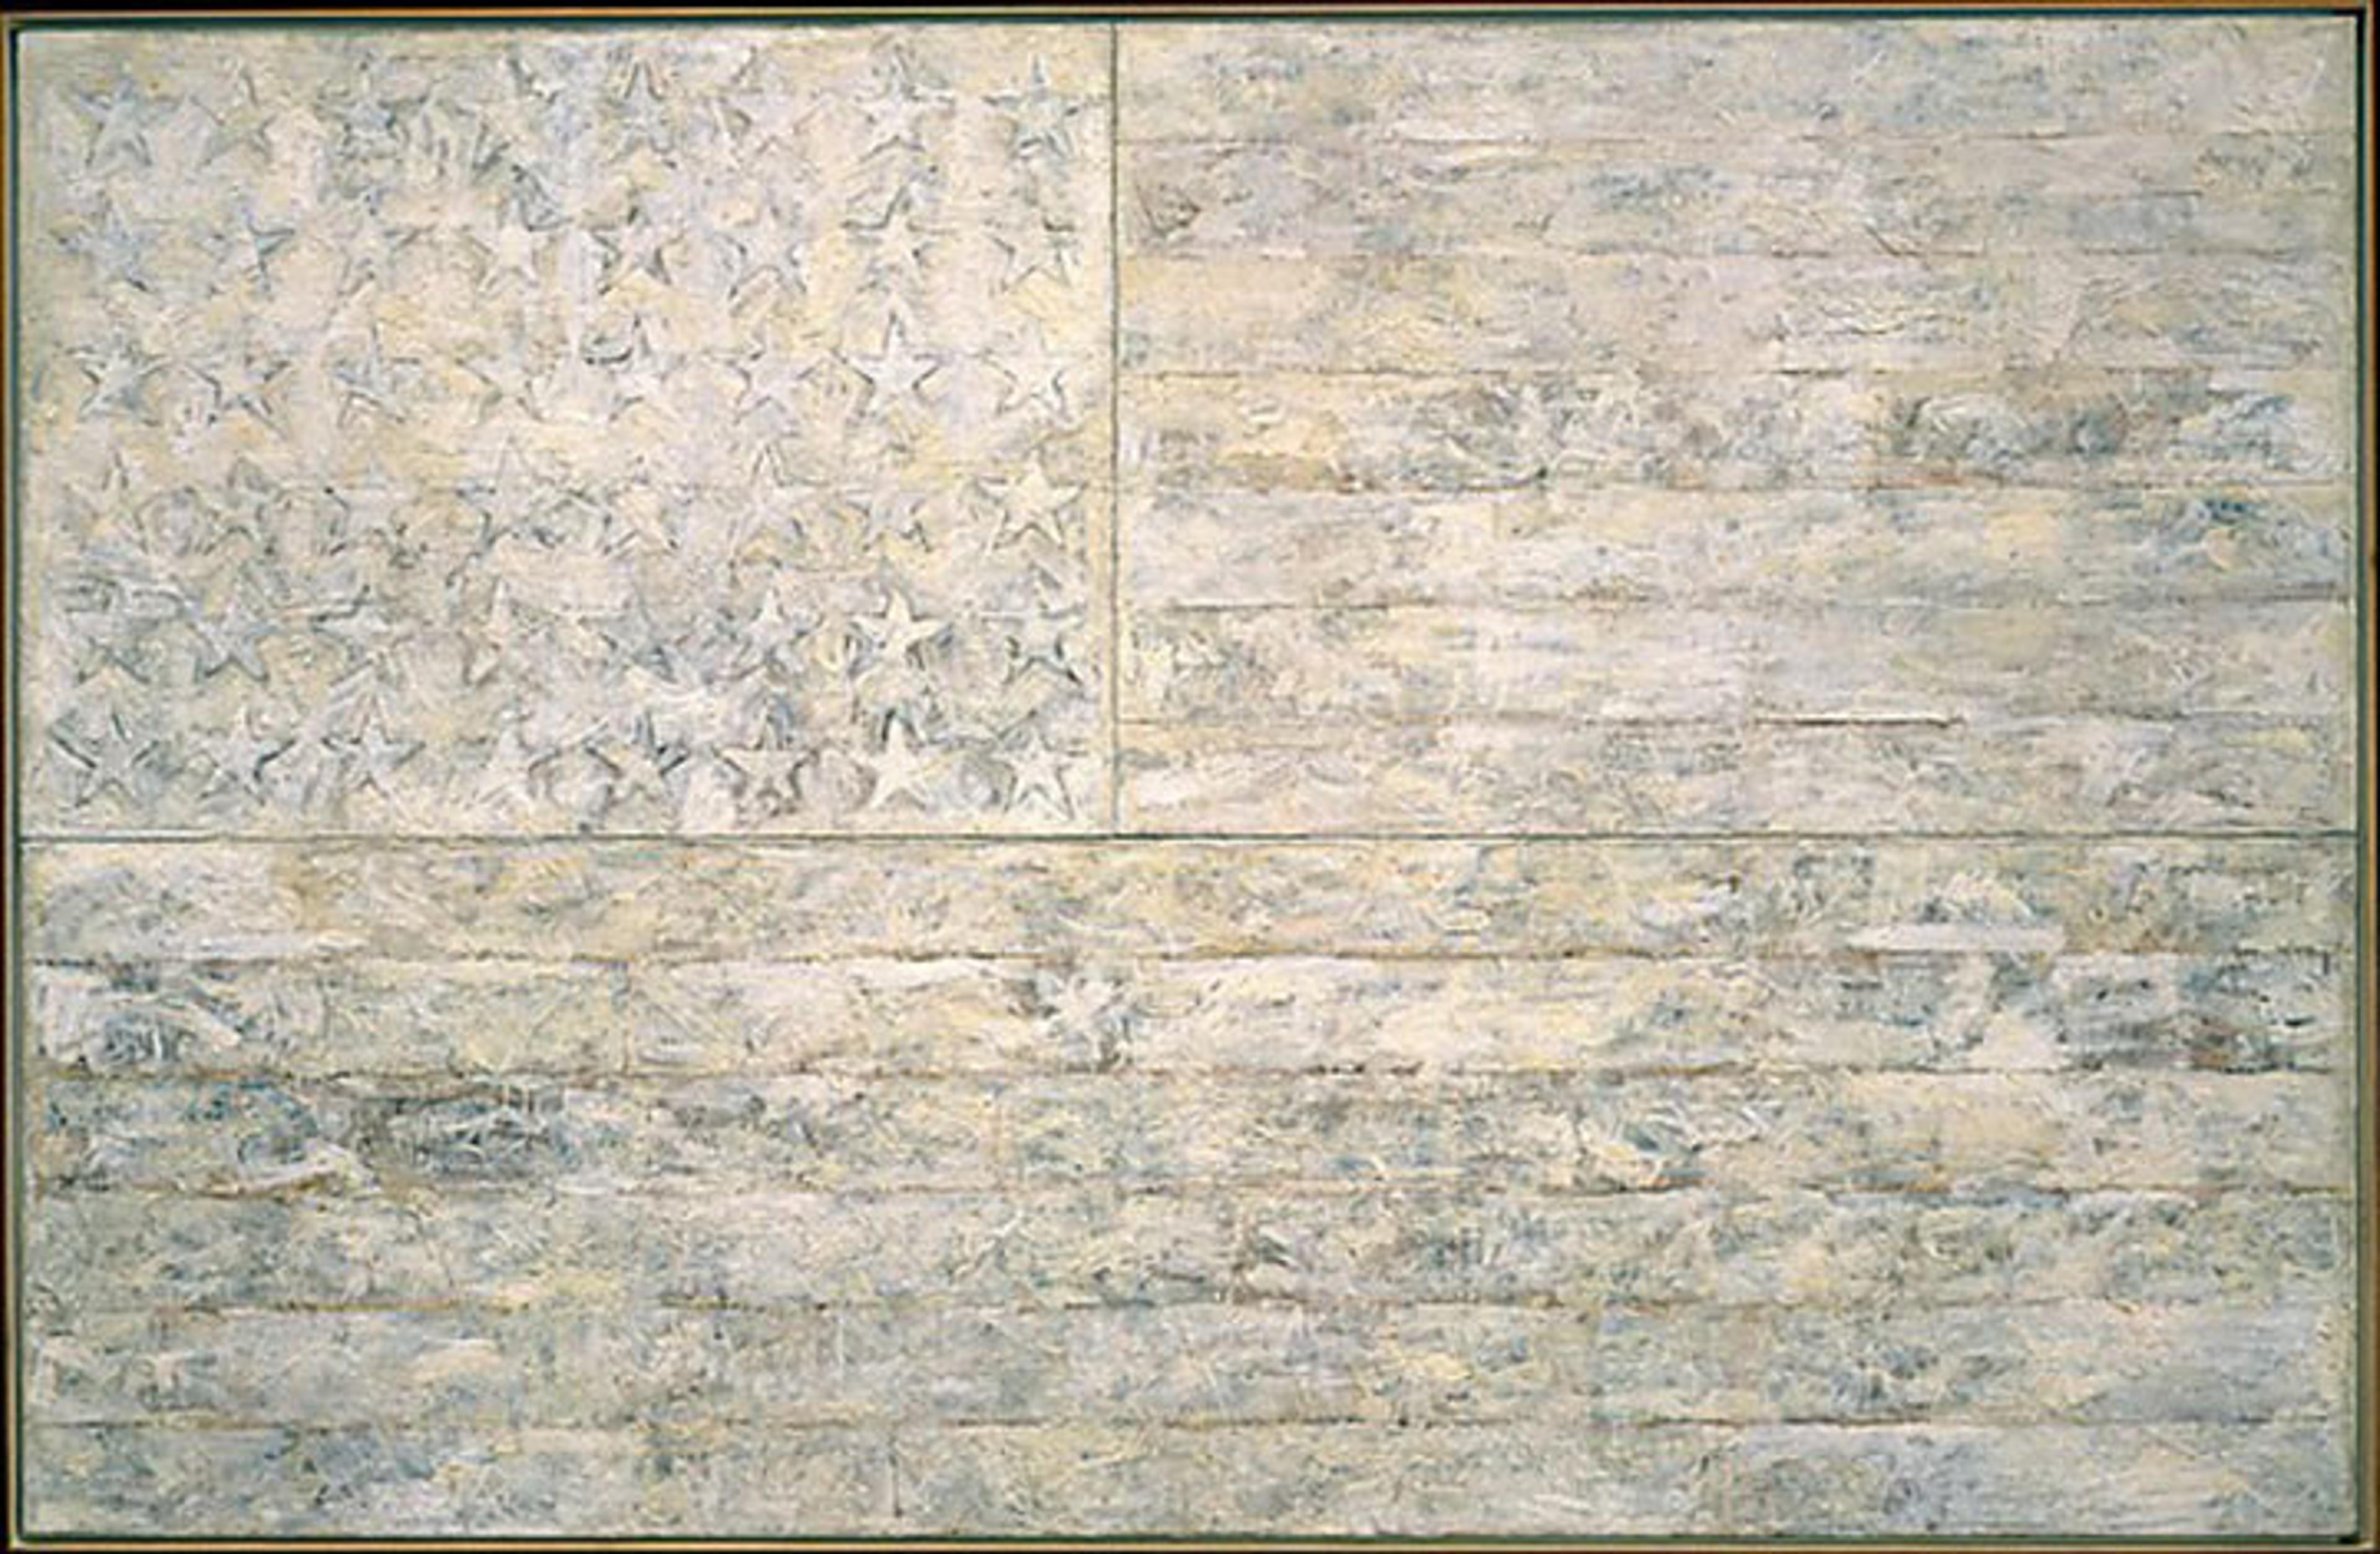 Jasper Johns, White Flag